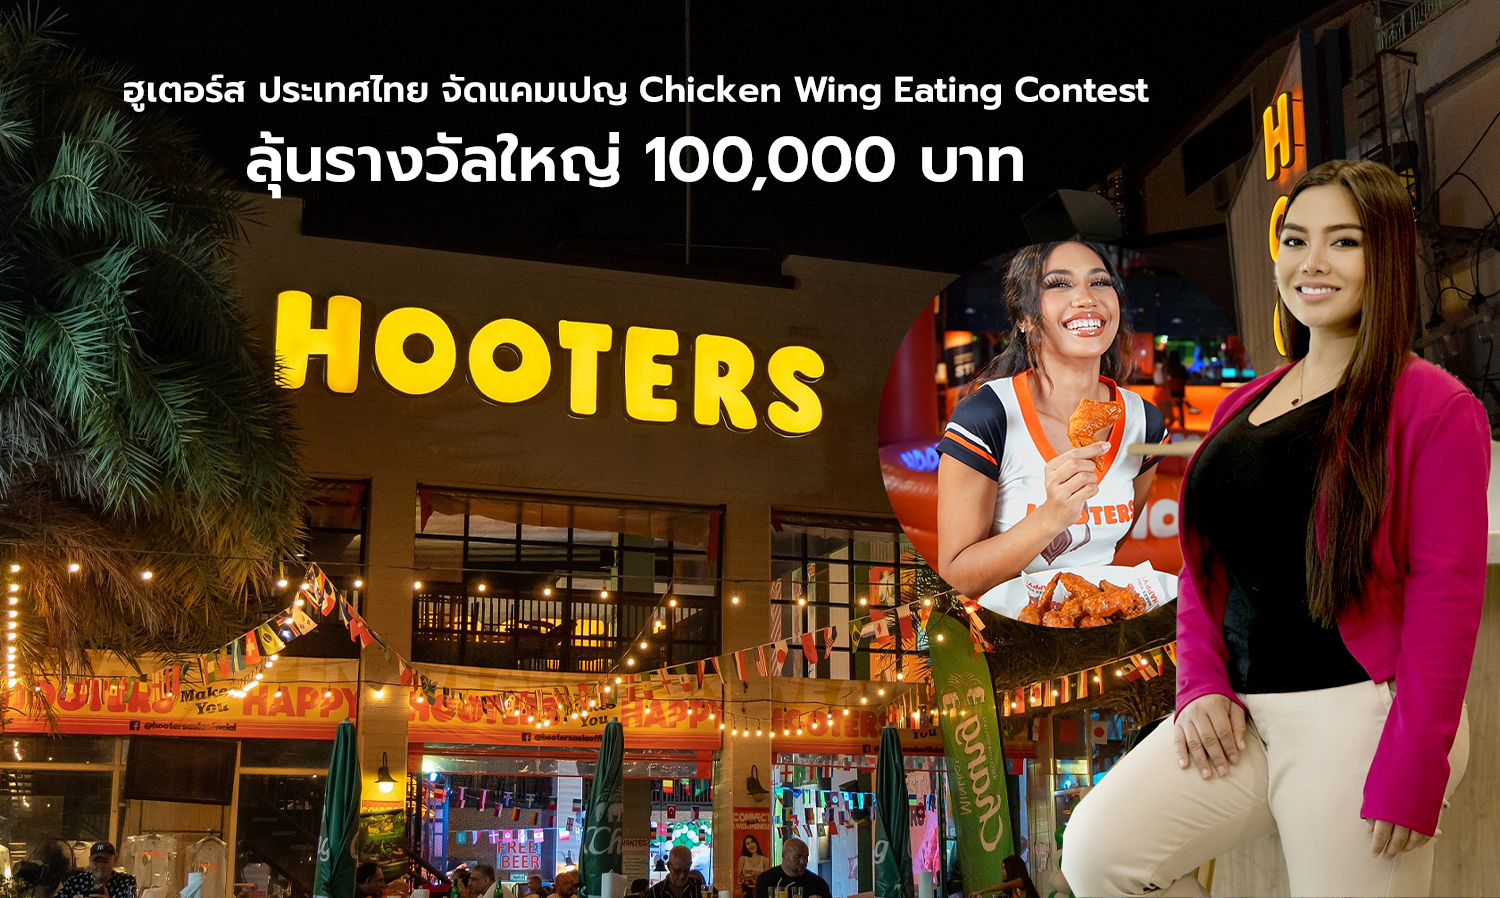 ฮูเตอร์ส ประเทศไทย จัดแคมเปญ Chicken Wing Eating Contest ลุ้นรางวัลใหญ่ 100,000 บาท